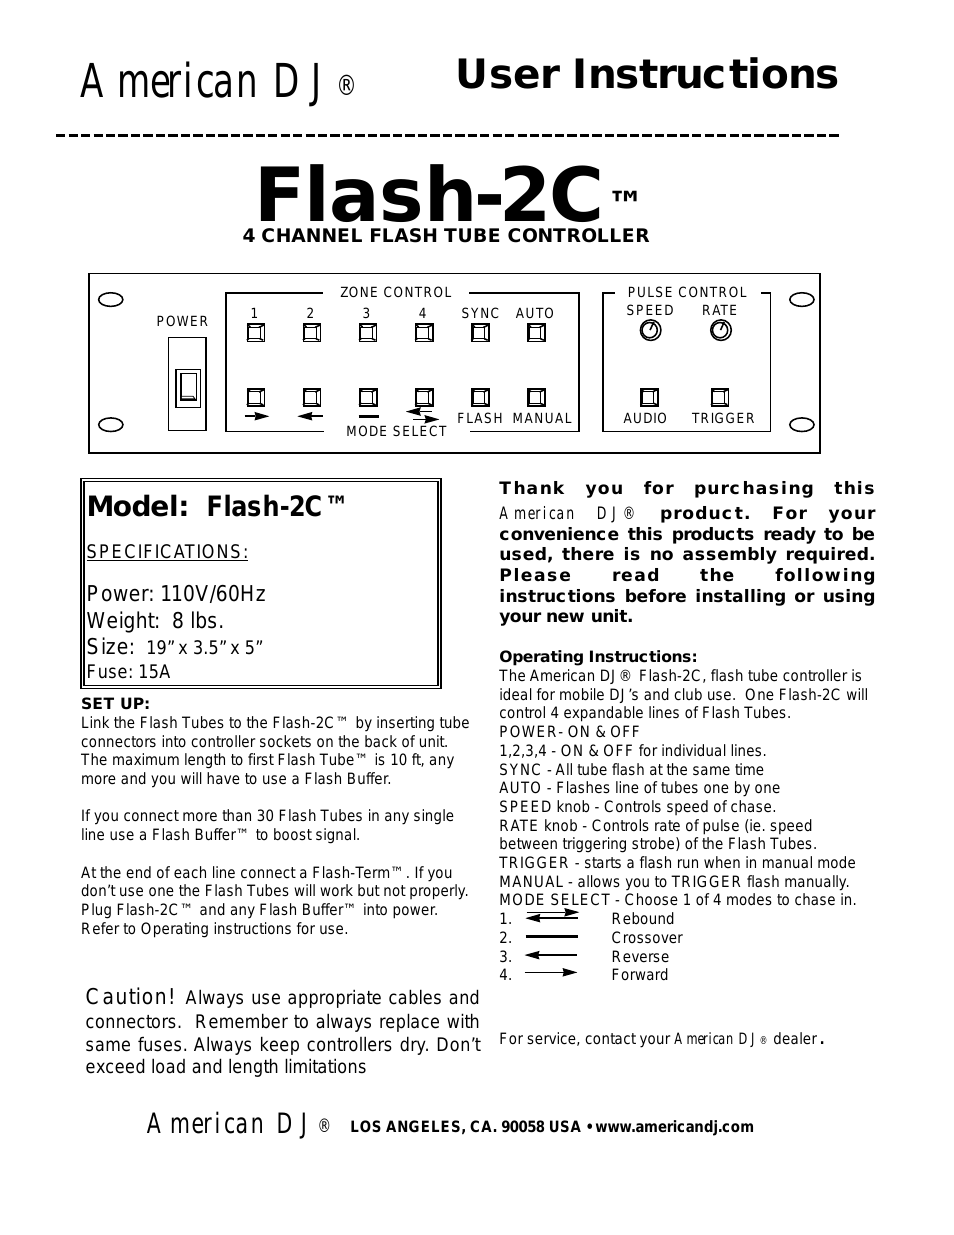 Flash-2C